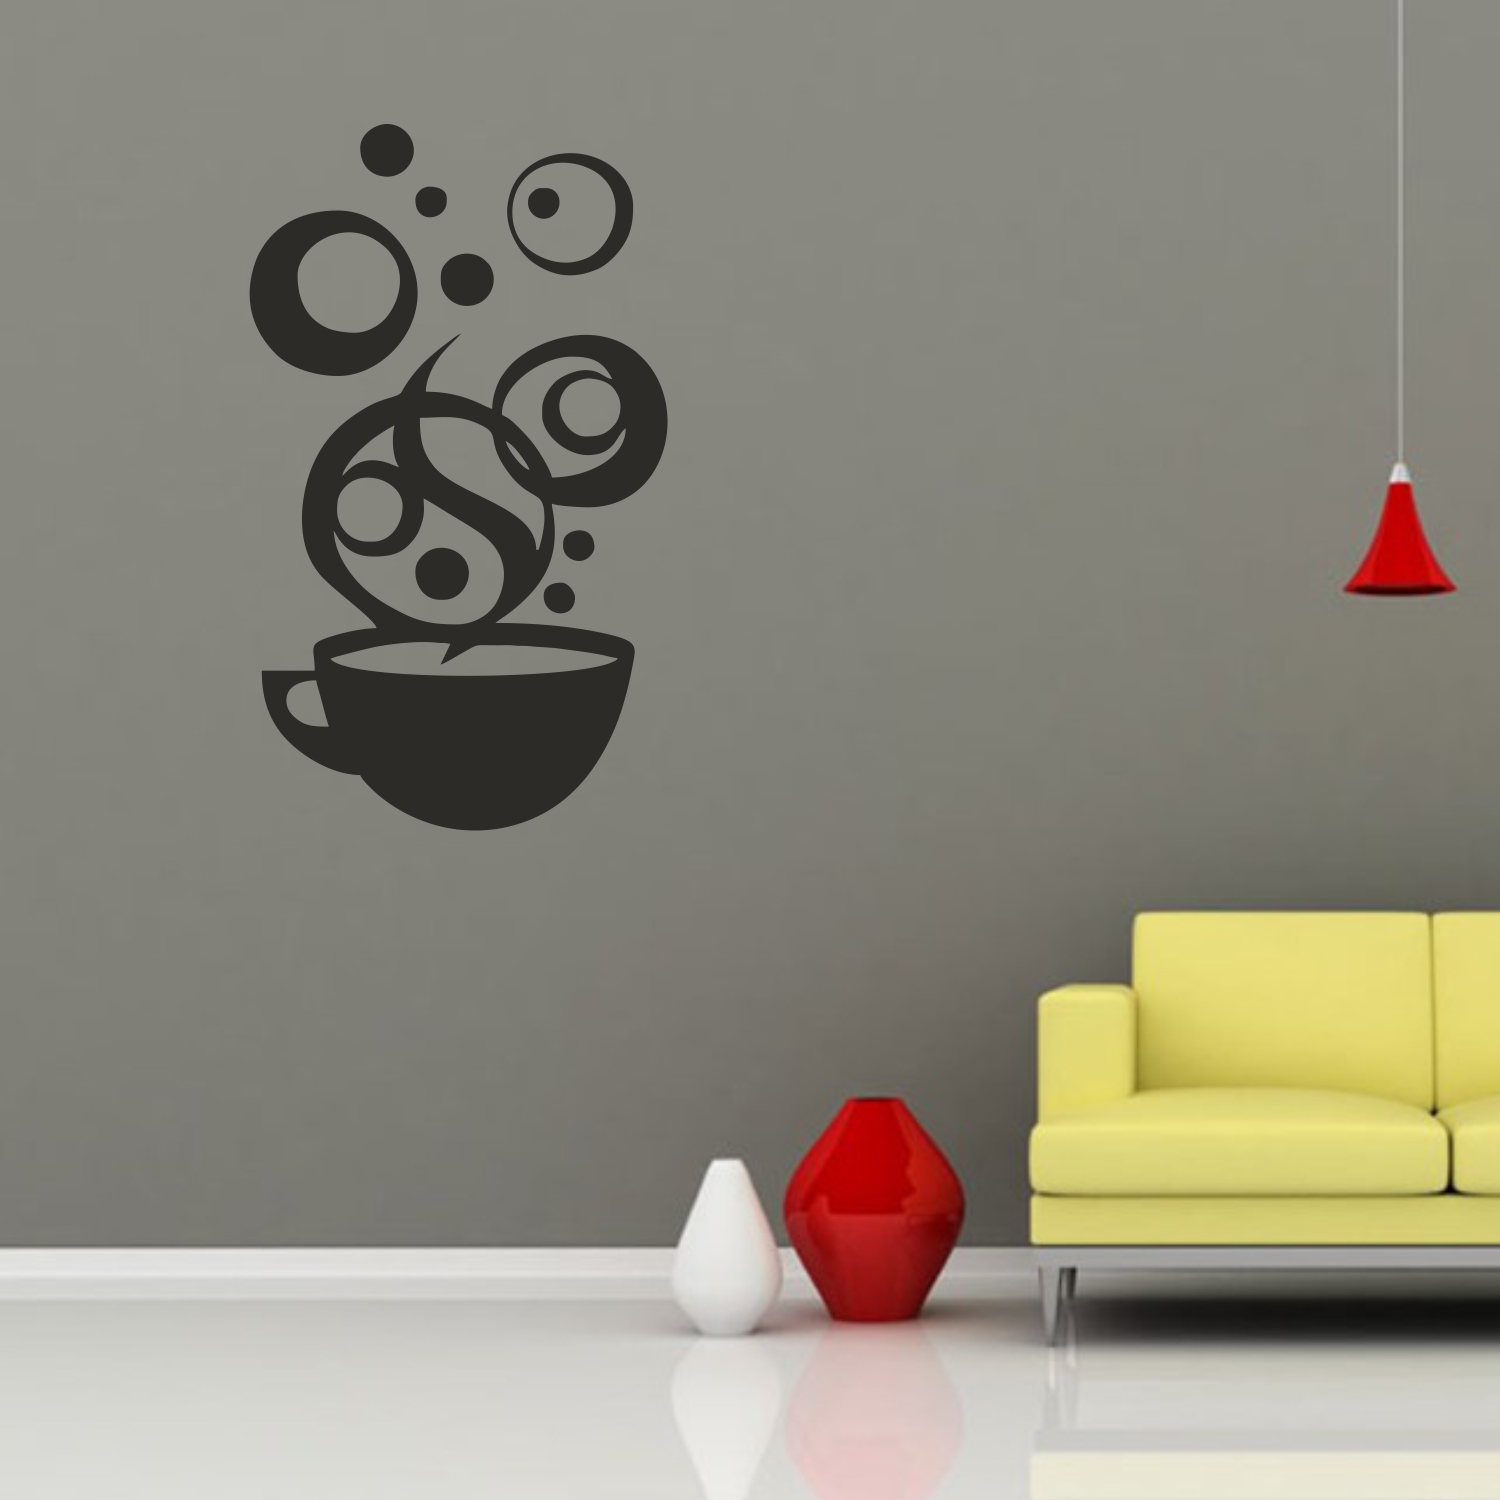 Image : Ceasca abstracta de cafea